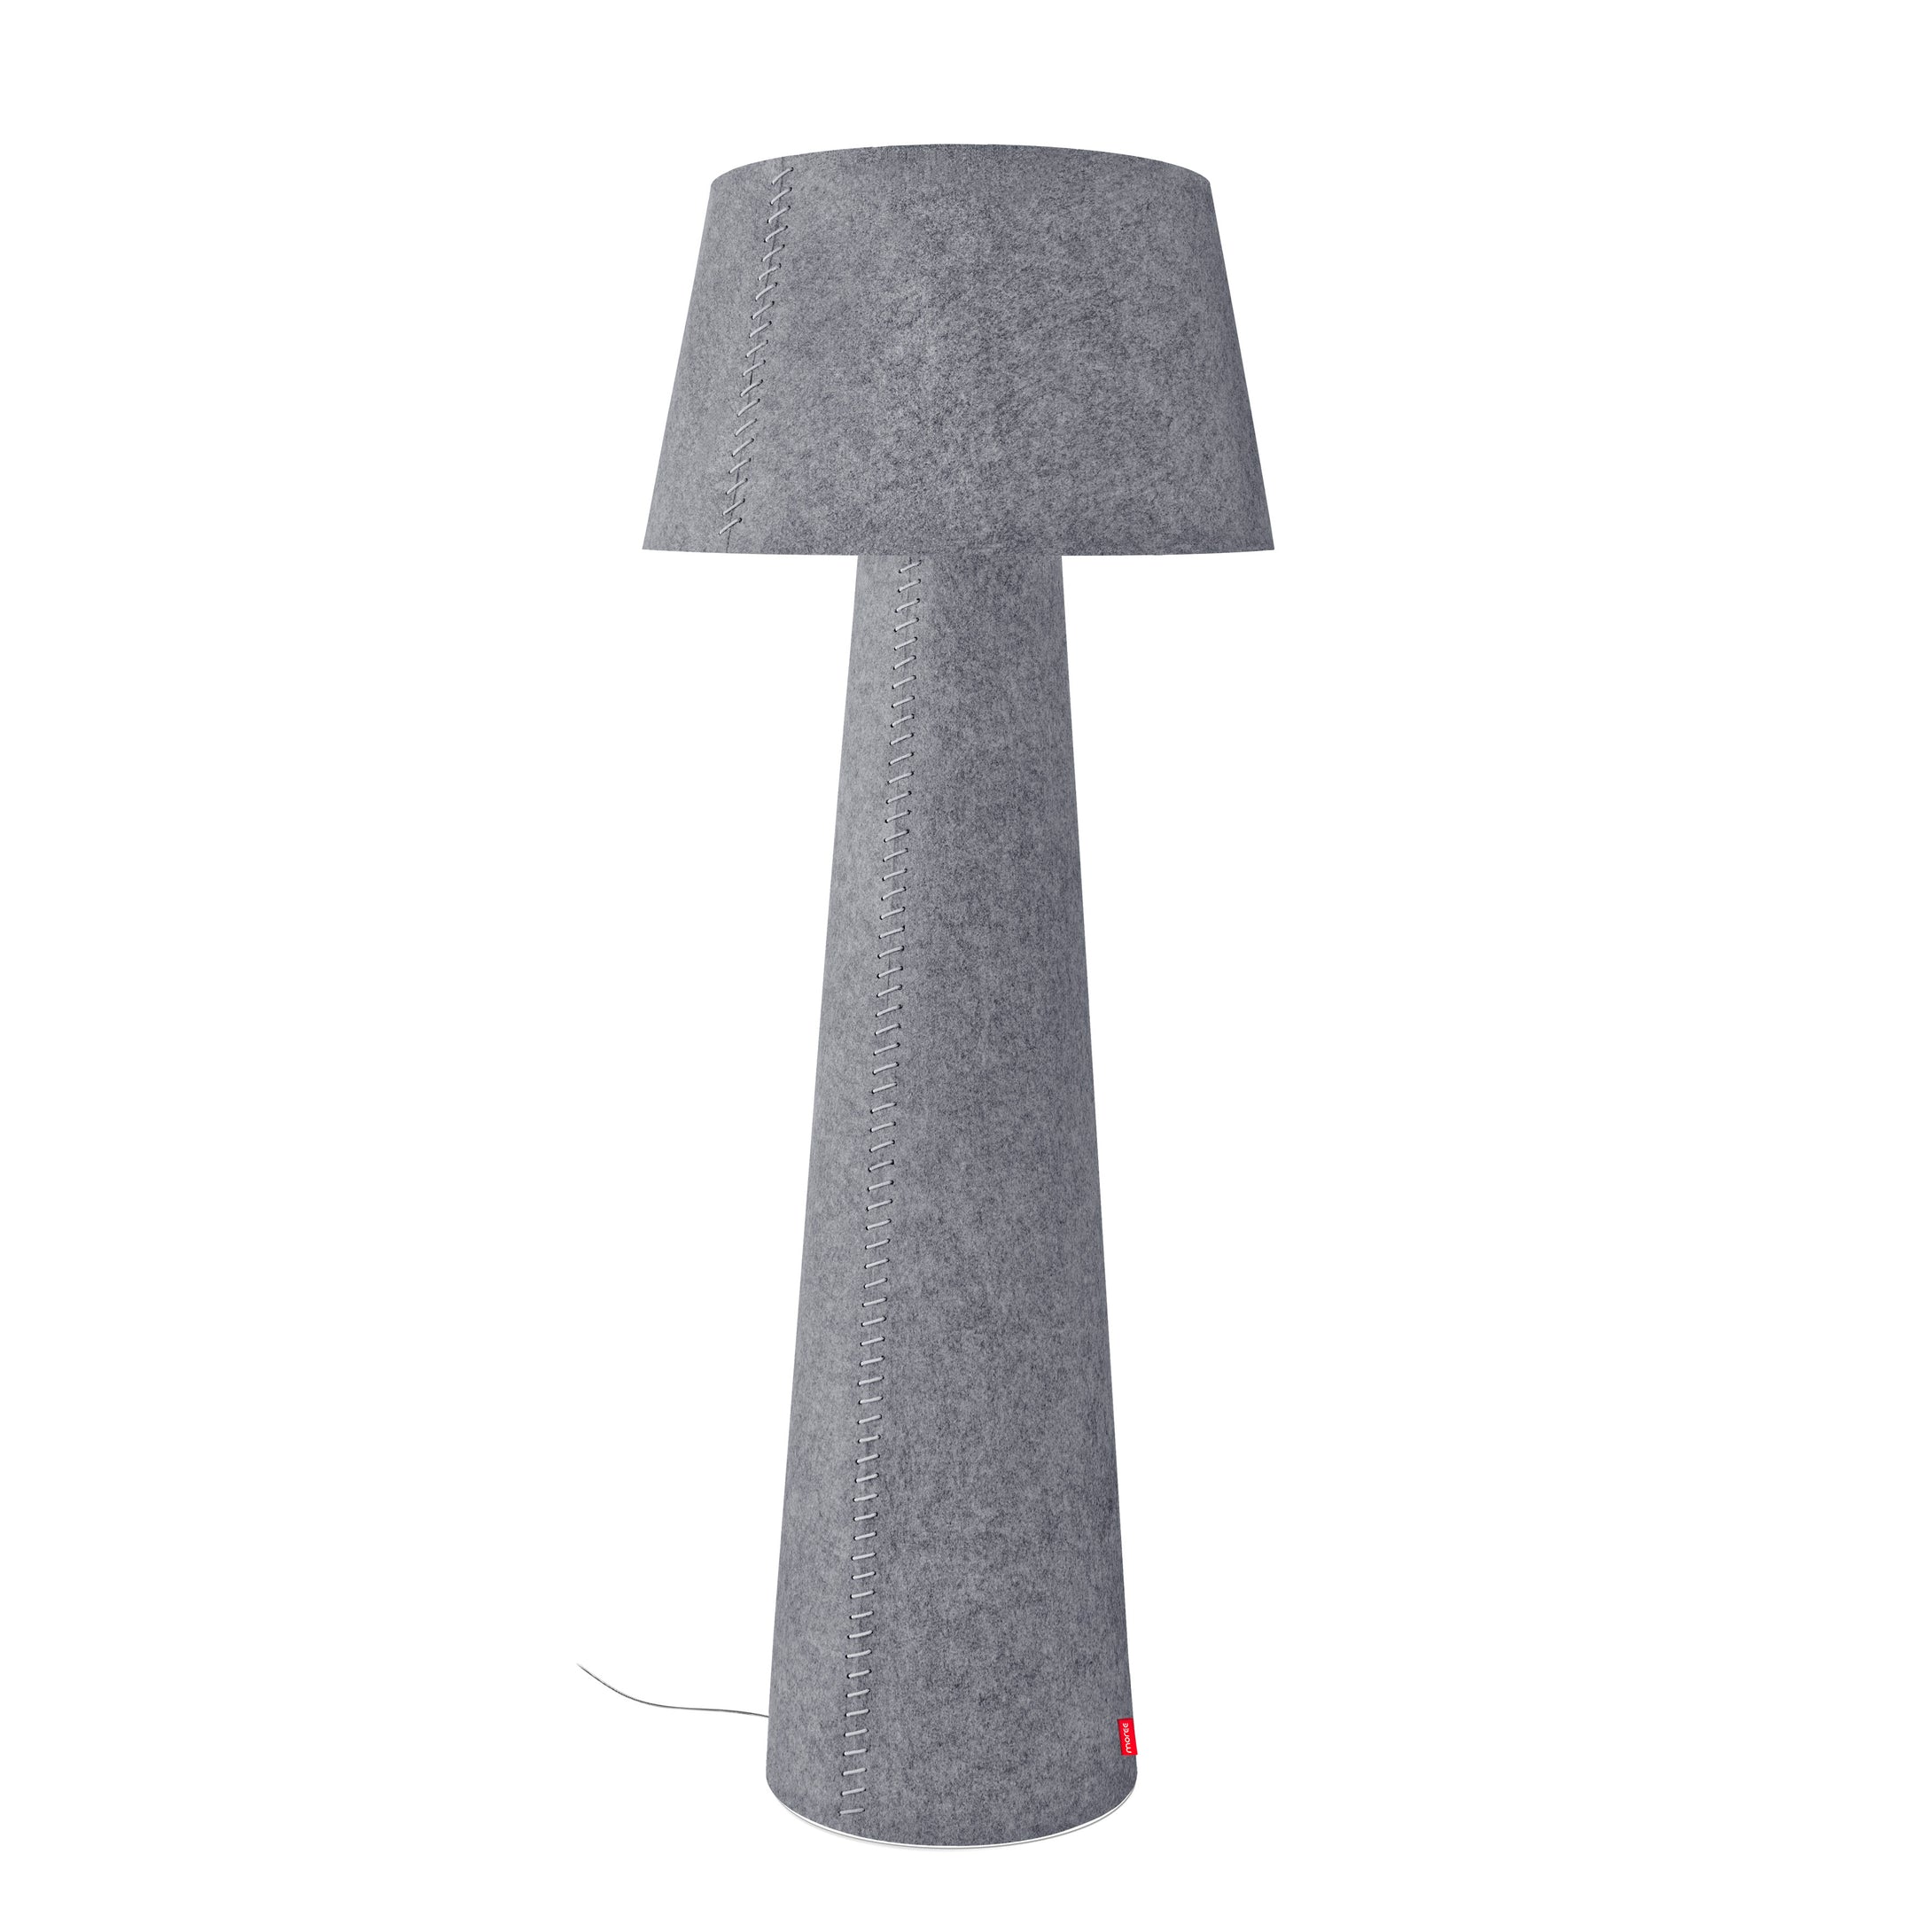 Alice XL, Stehlampe von Moree mit konisch zulaufendem Fuß; die ganze Lampe bespannt mit grauem Filz, der runde Lampenschirm ist schwenkbar.